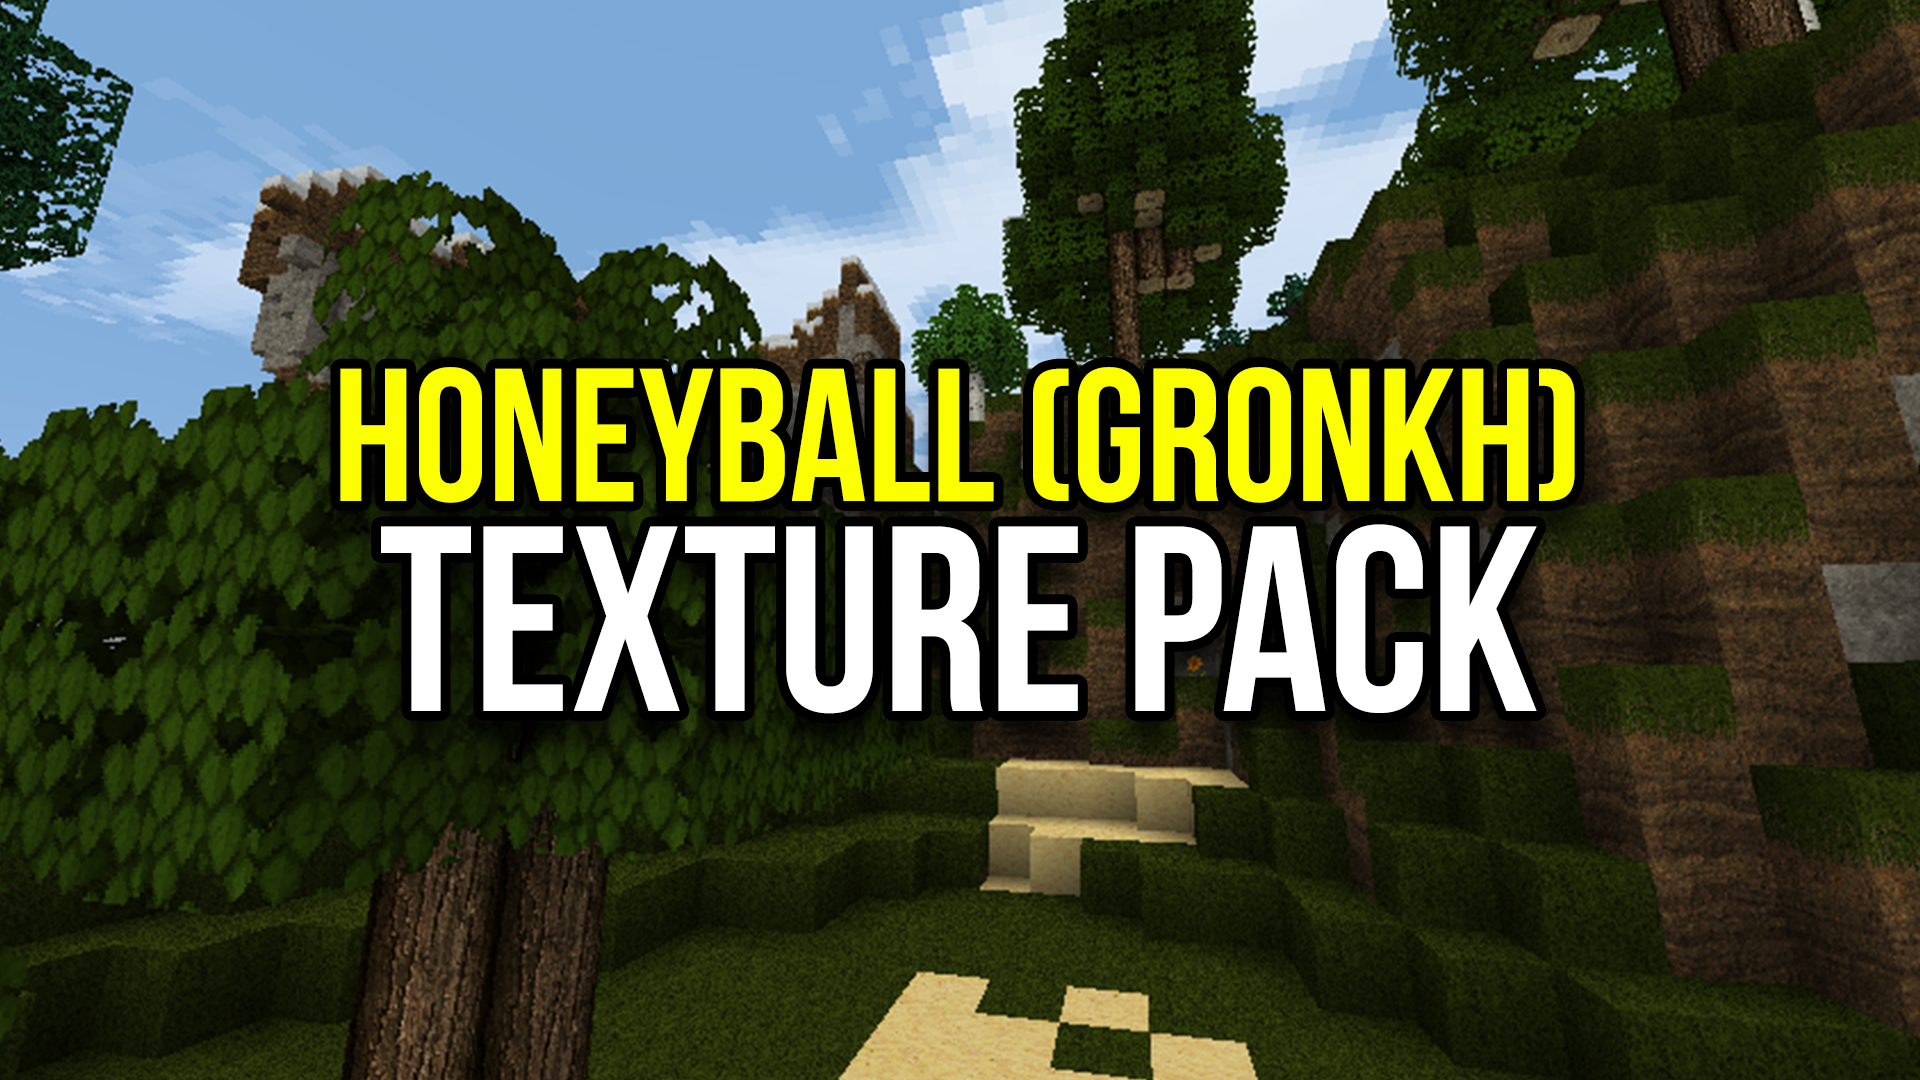 MeineKraft (Gronkh) Honeyball Texture Pack Thumbnail